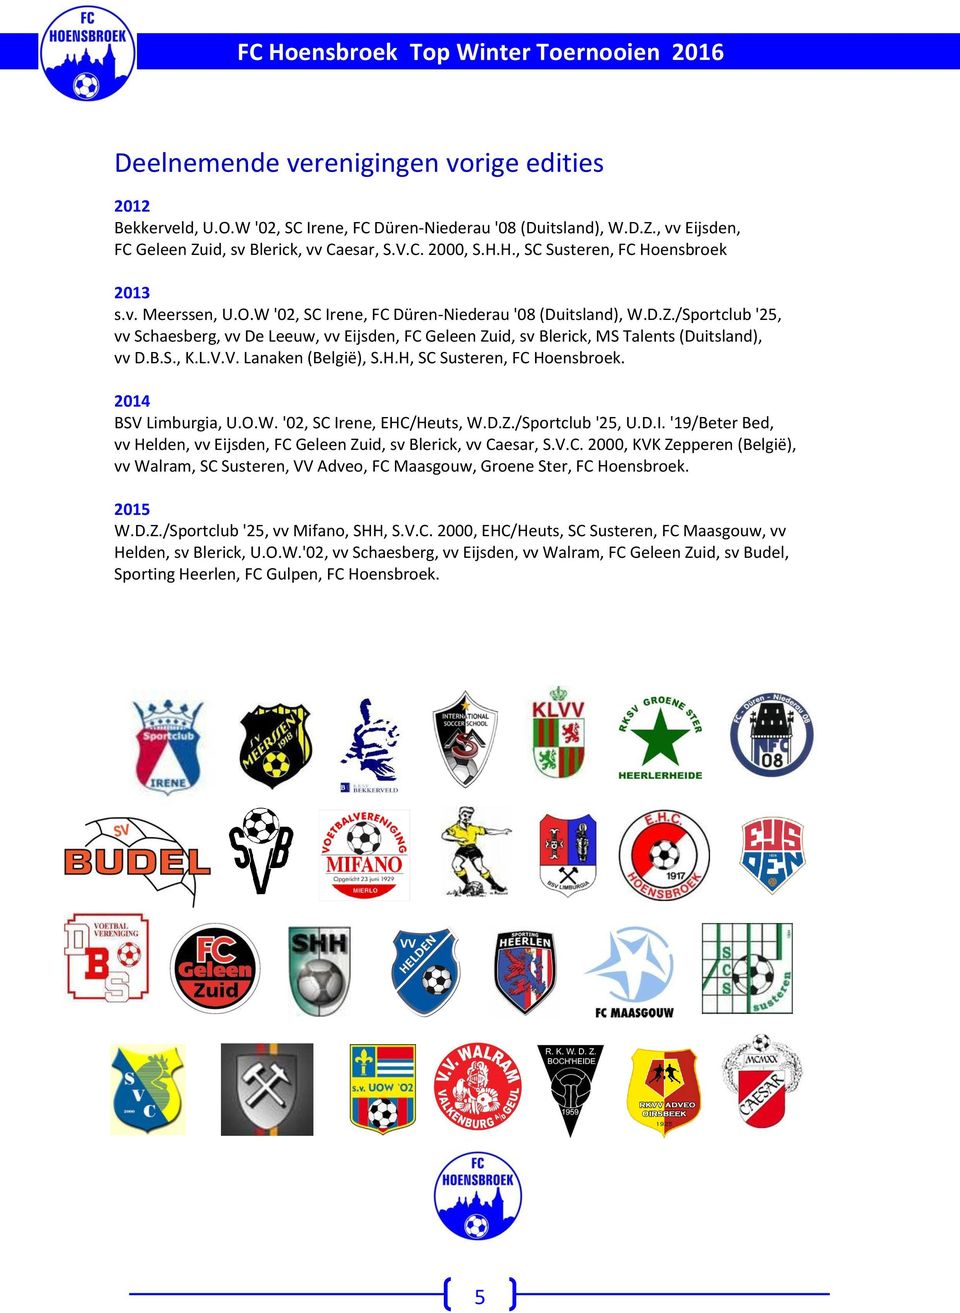 B.S., K.L.V.V. Lanaken (België), S.H.H, SC Susteren, FC Hoensbroek. 2014 BSV Limburgia, U.O.. '02, SC Irene, EHC/Heuts,.D.Z./Sportclub '25, U.D.I. '19/Beter Bed, vv Helden, vv Eijsden, FC Geleen Zuid, sv Blerick, vv Caesar, S.